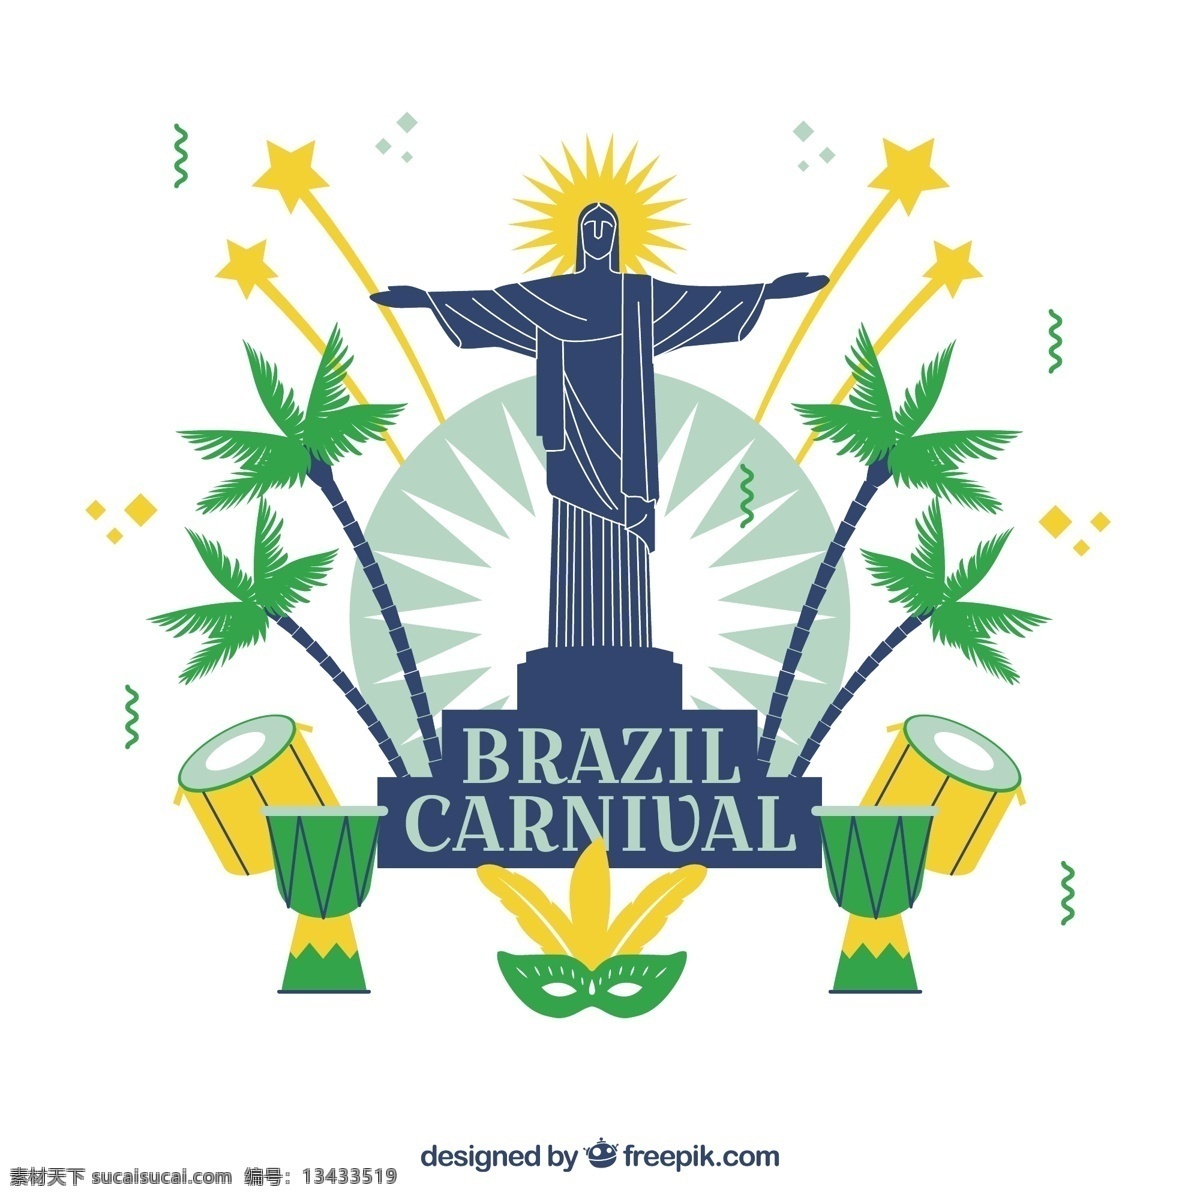 巴西 背景 基督 救世主 党 庆典 节日 事件 狂欢节 节 平 树木 面具 平面设计 棕榈 党背景 假面舞会 娱乐